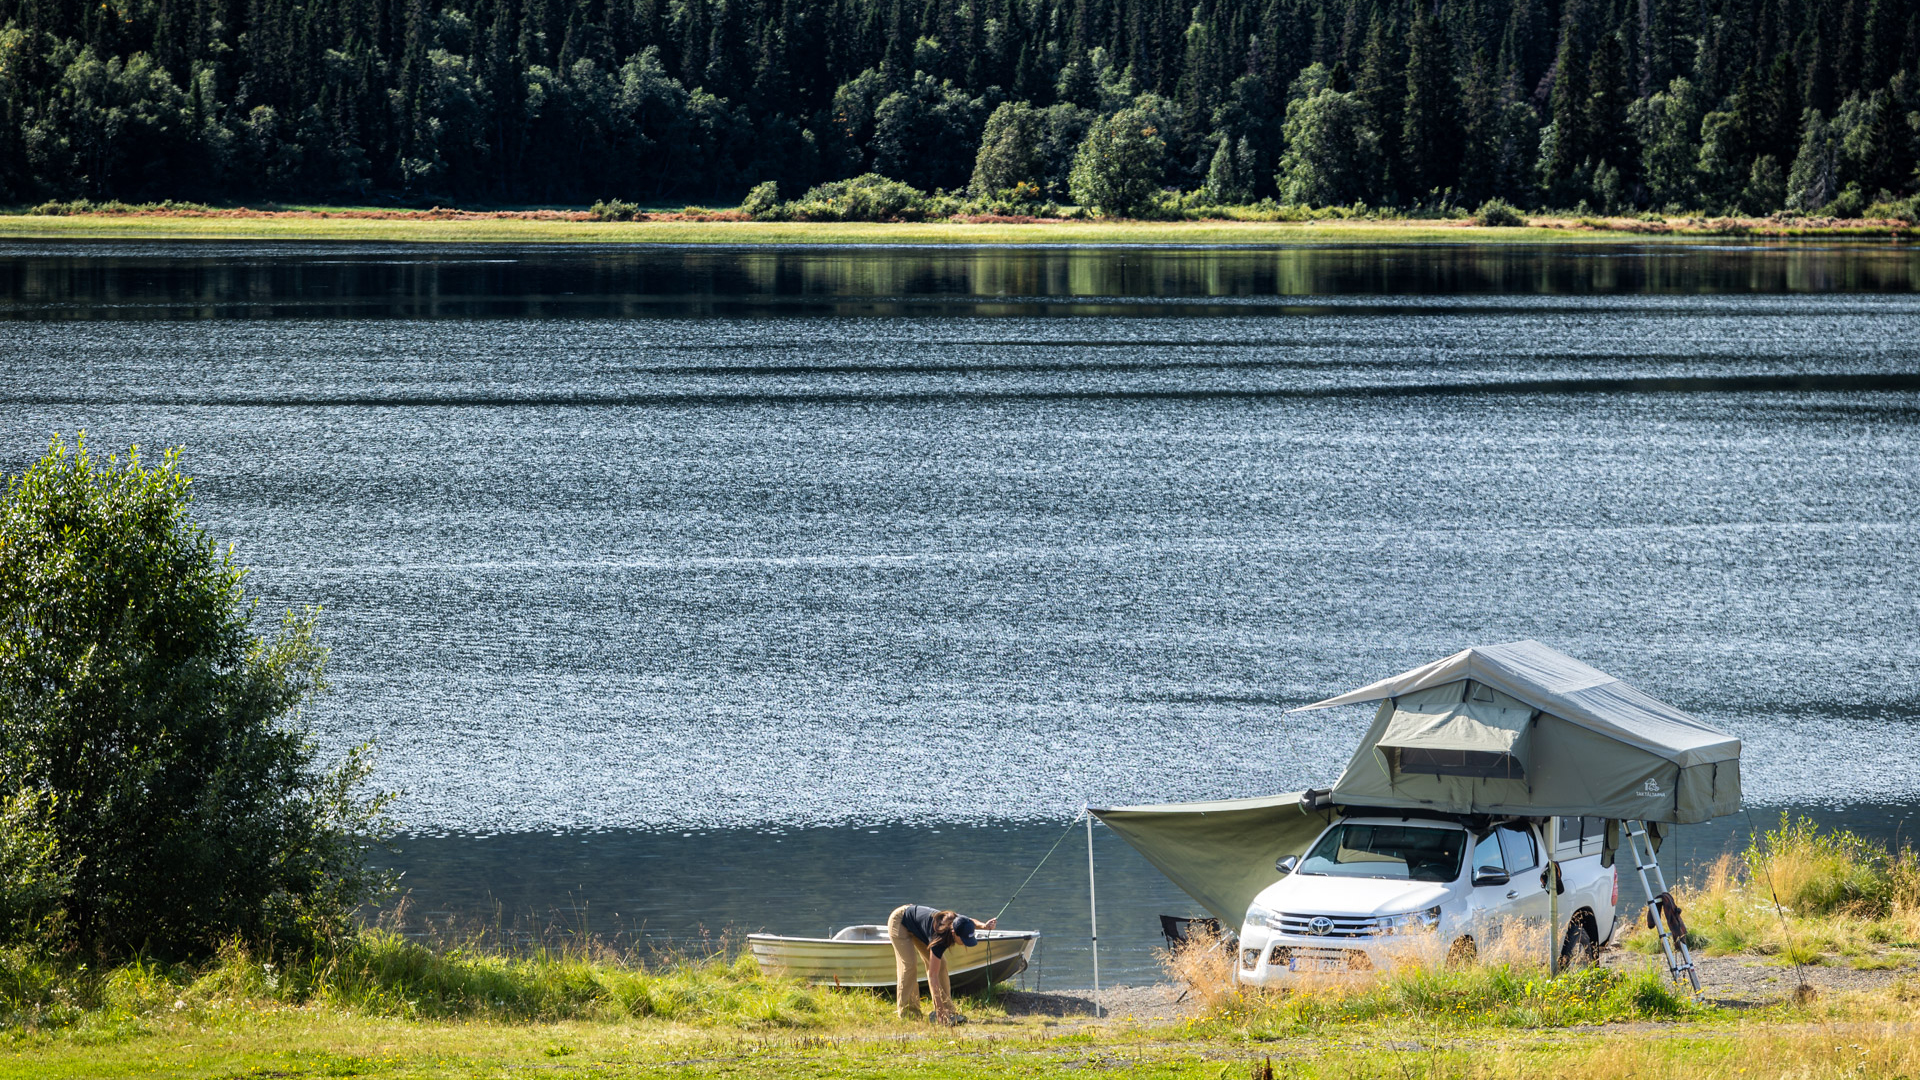 Utomhus. Sommar. En bil med ett taktält som står parkerad vid en sjö. En tjej står bredvid och håller på att sätta upp tältet.